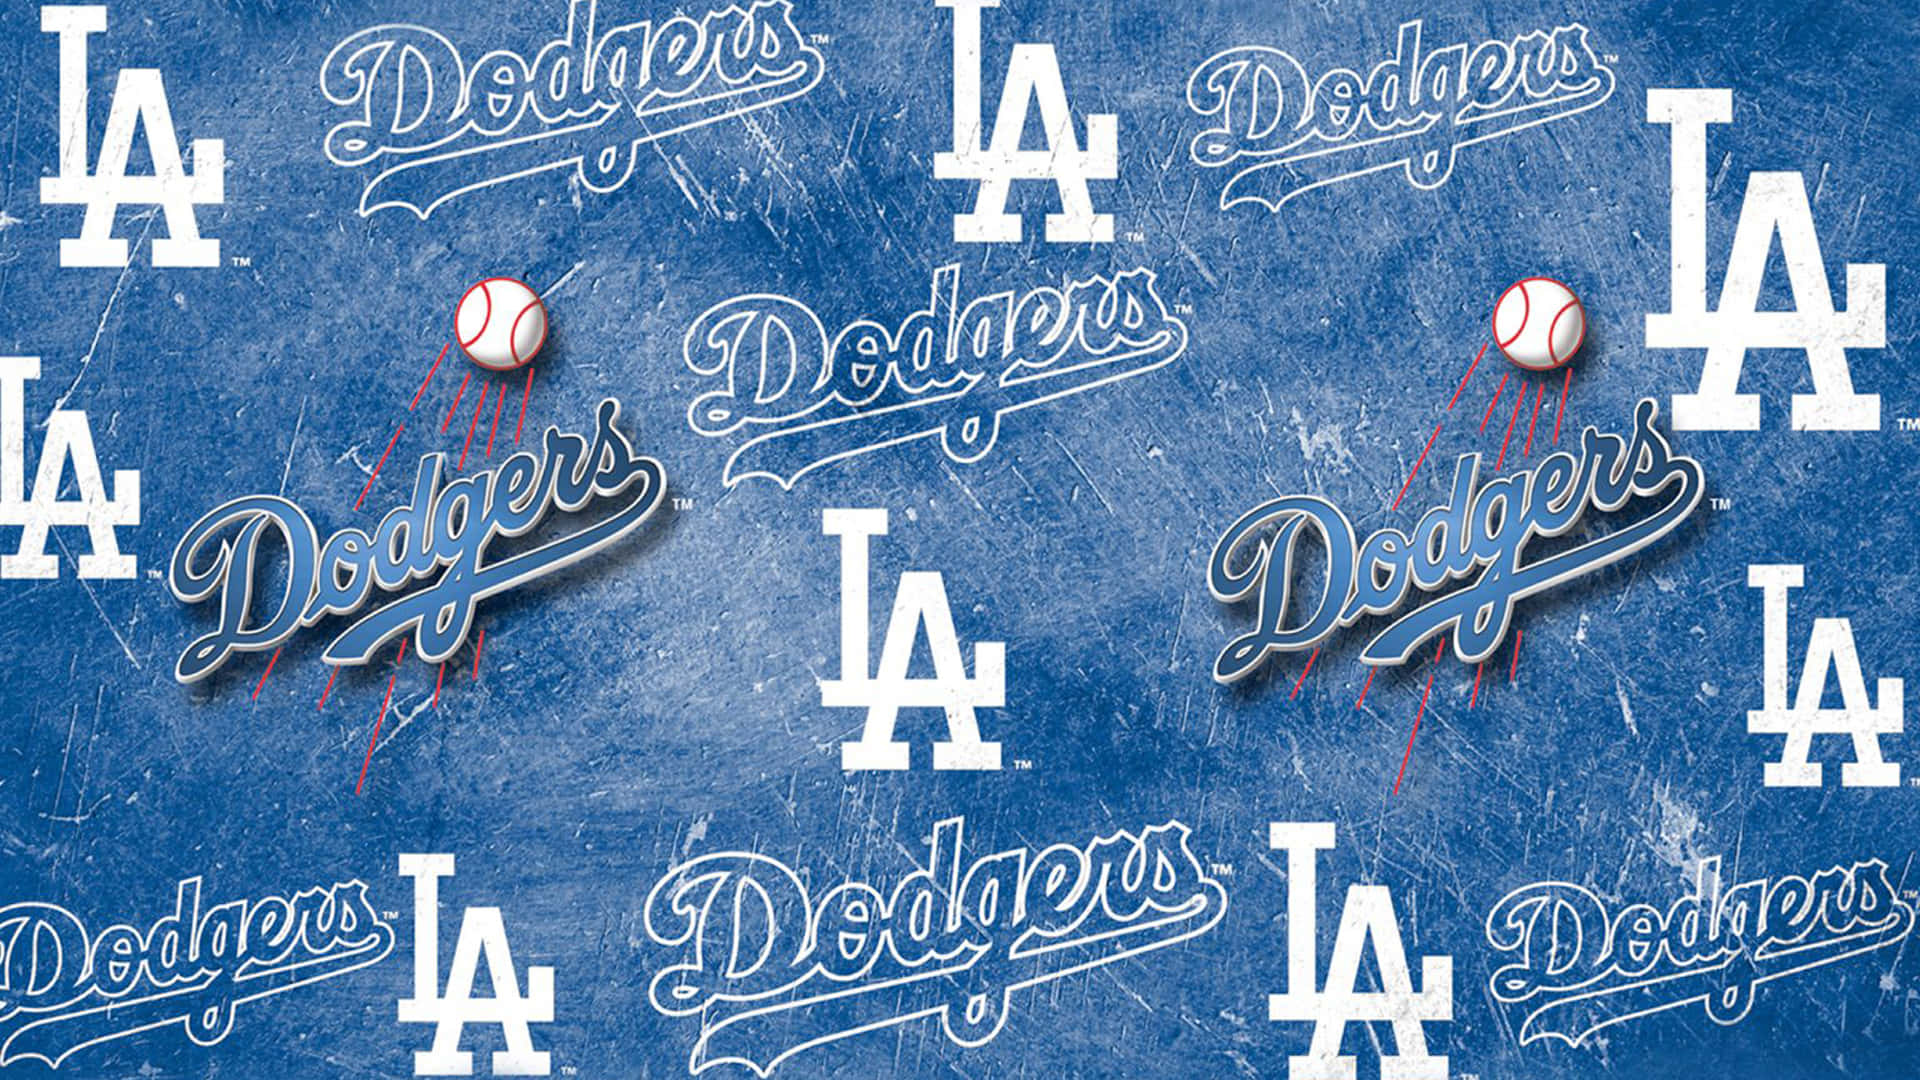 L A Dodgers Logoand Baseball Background Wallpaper